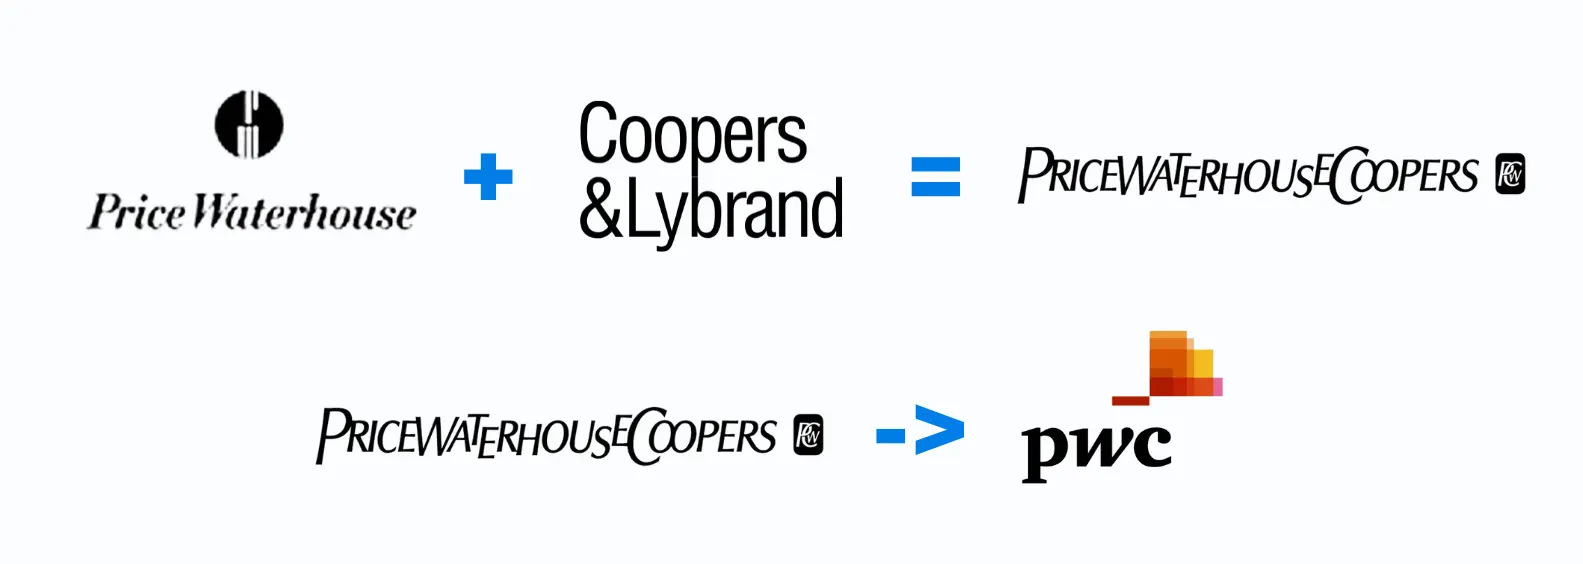 brands merge logo changing